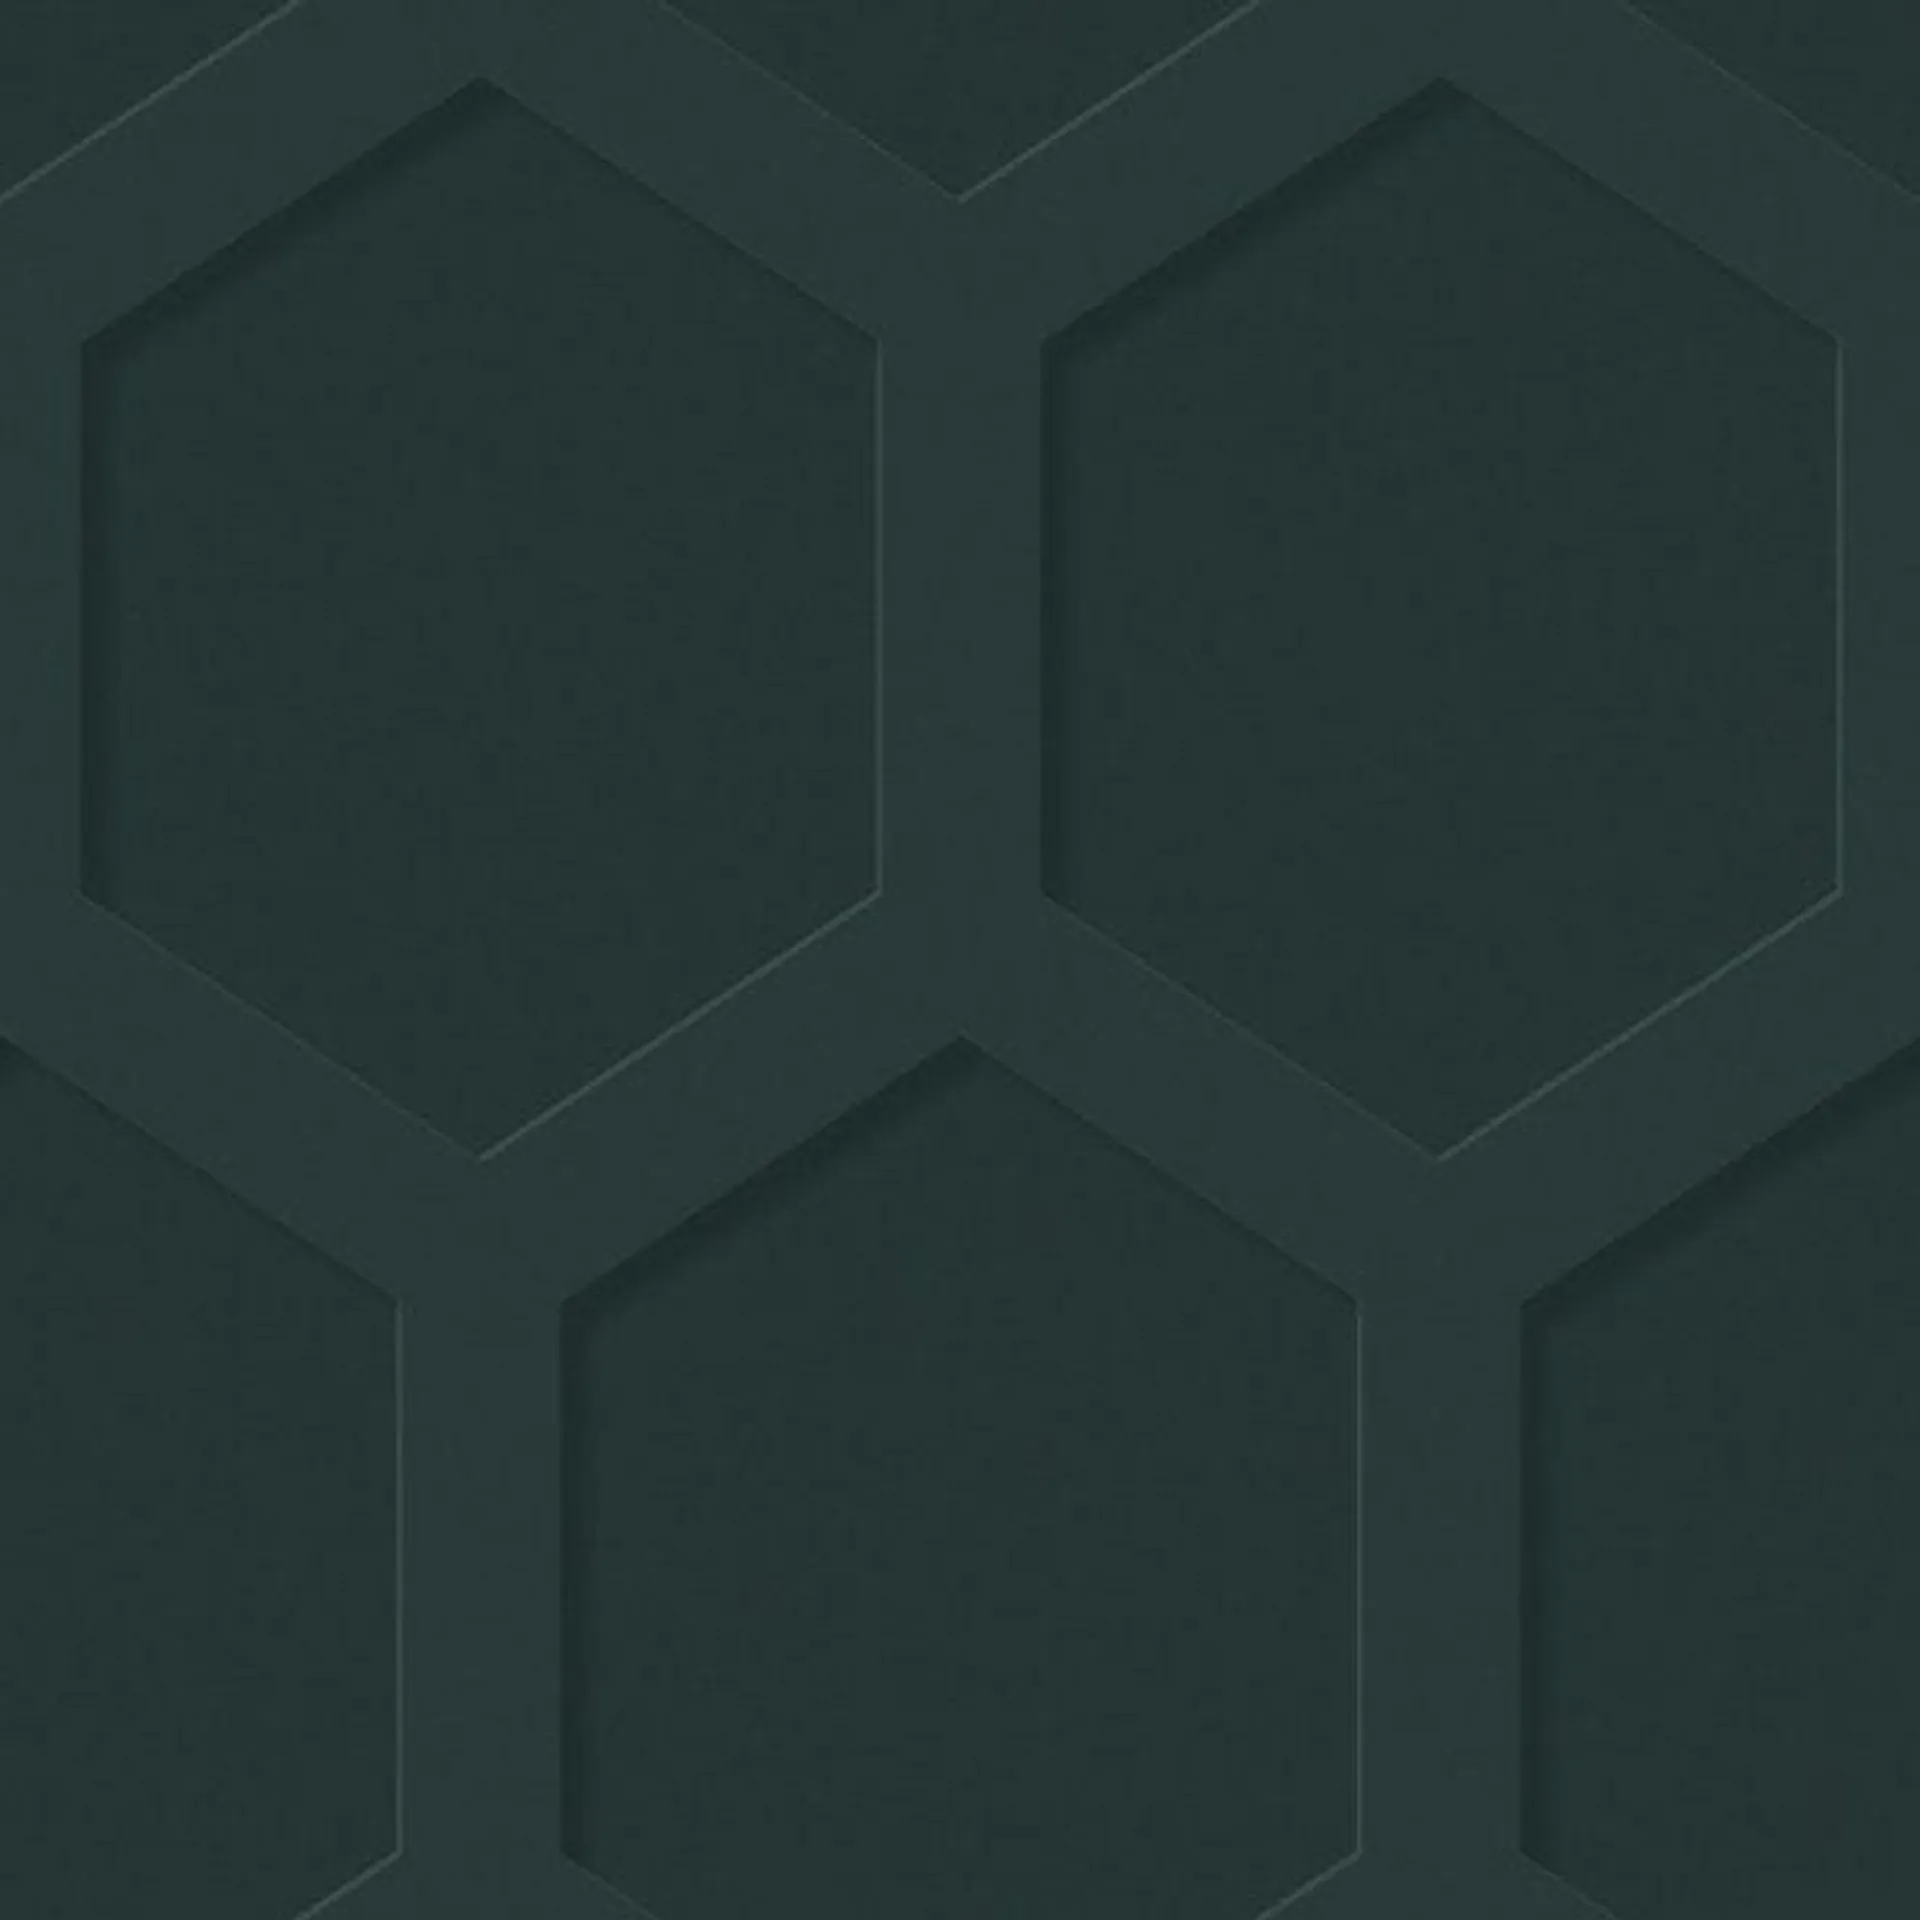 Hexagon Wood Panel wallpaper in emerald